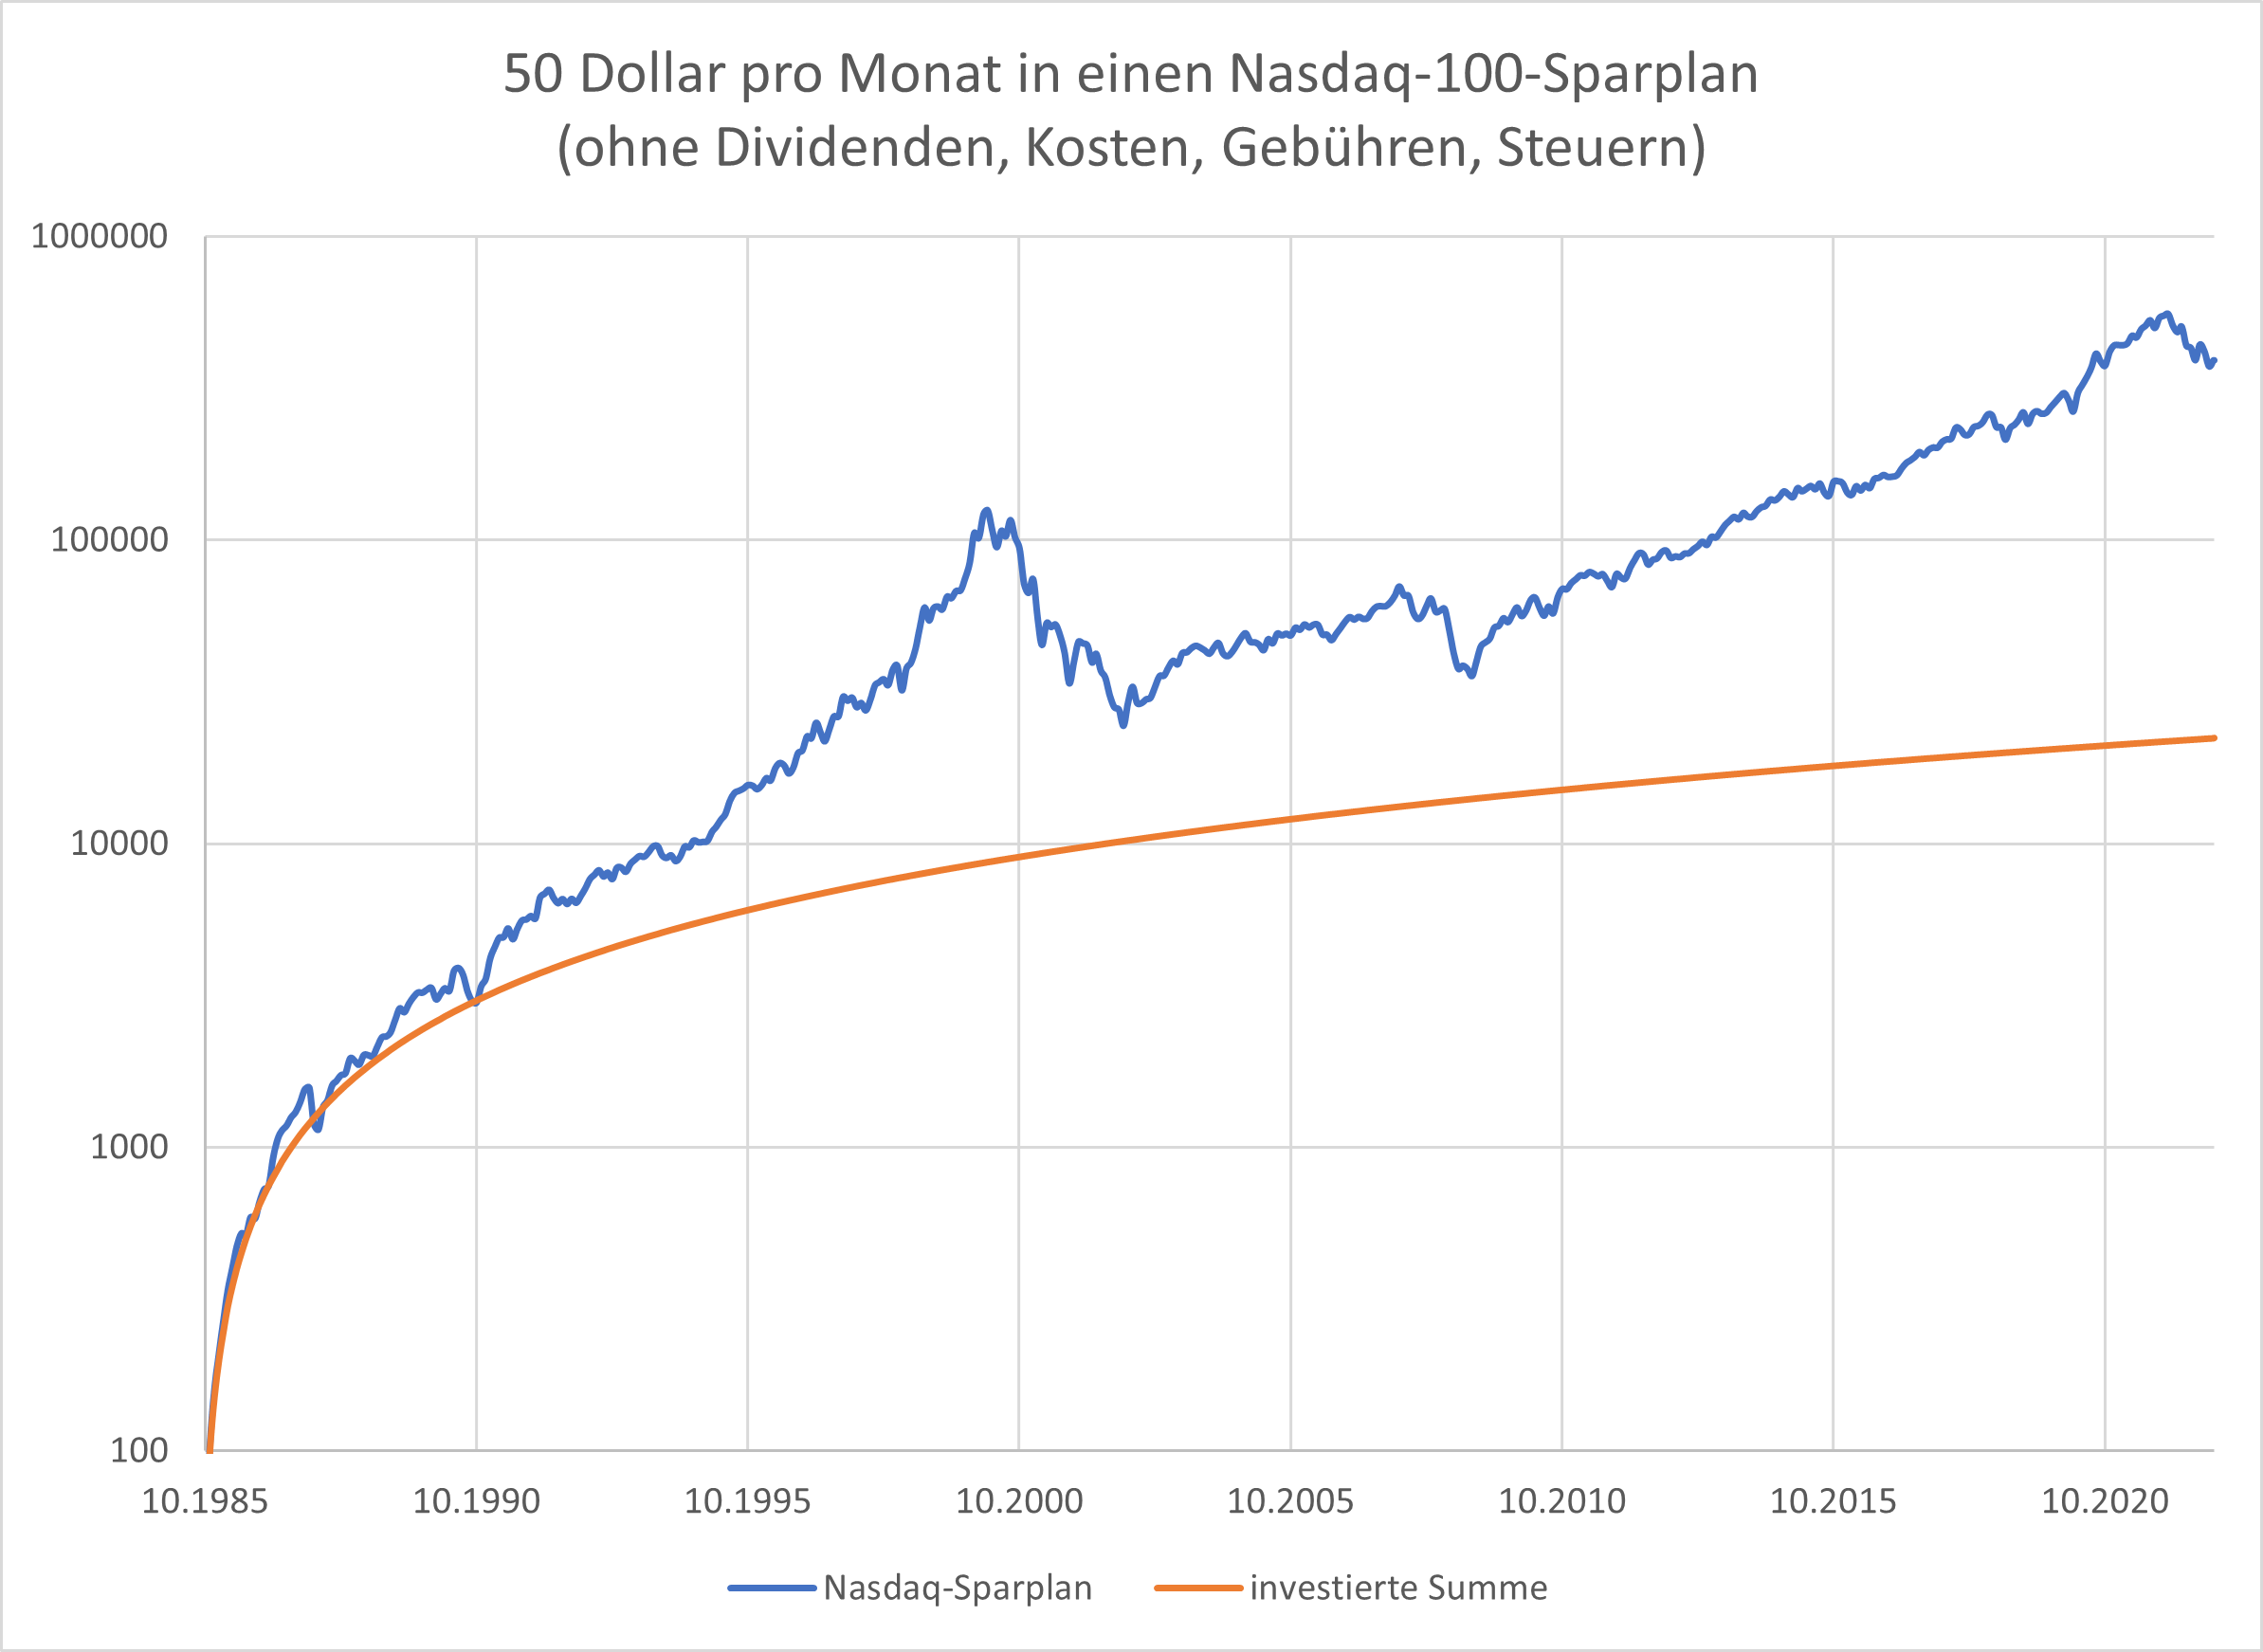 Nasdaq-100-Der-Überflieger-unter-den-Index-Investments-Oliver-Baron-GodmodeTrader.de-3